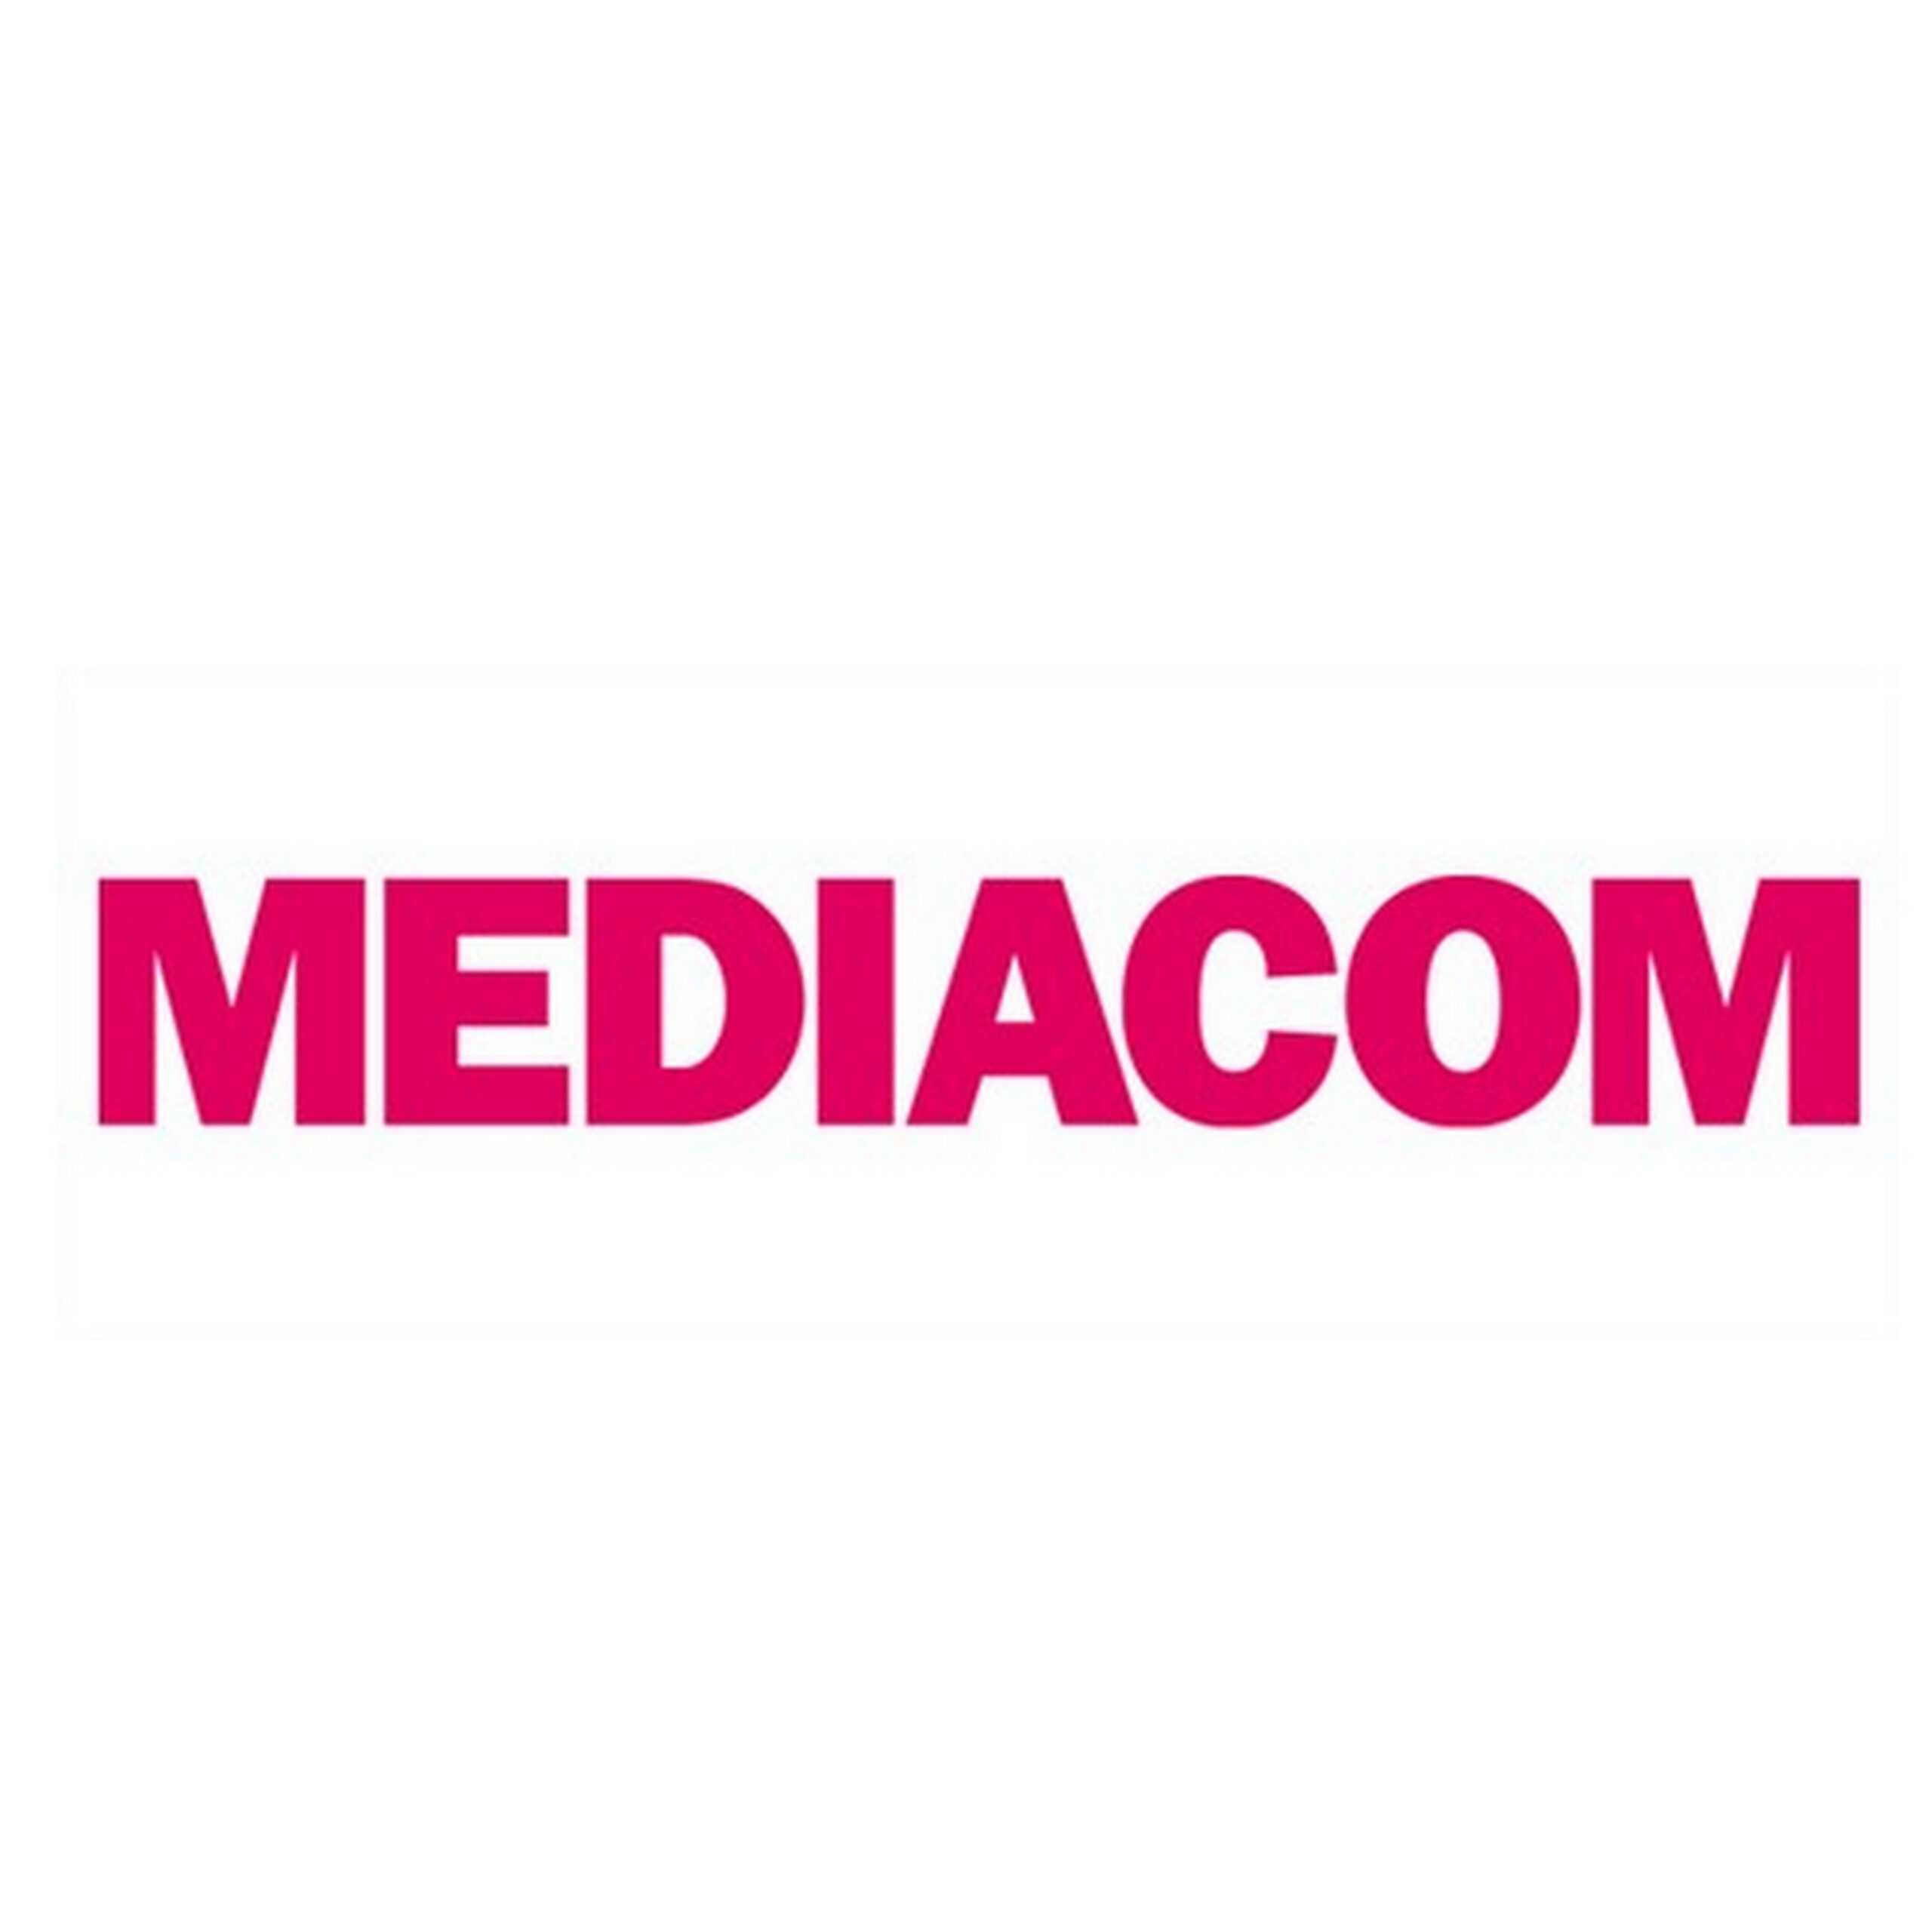 MediaCom zwycięzcą w globalnym przetargu MediaCom mediarun com mediacom scaled